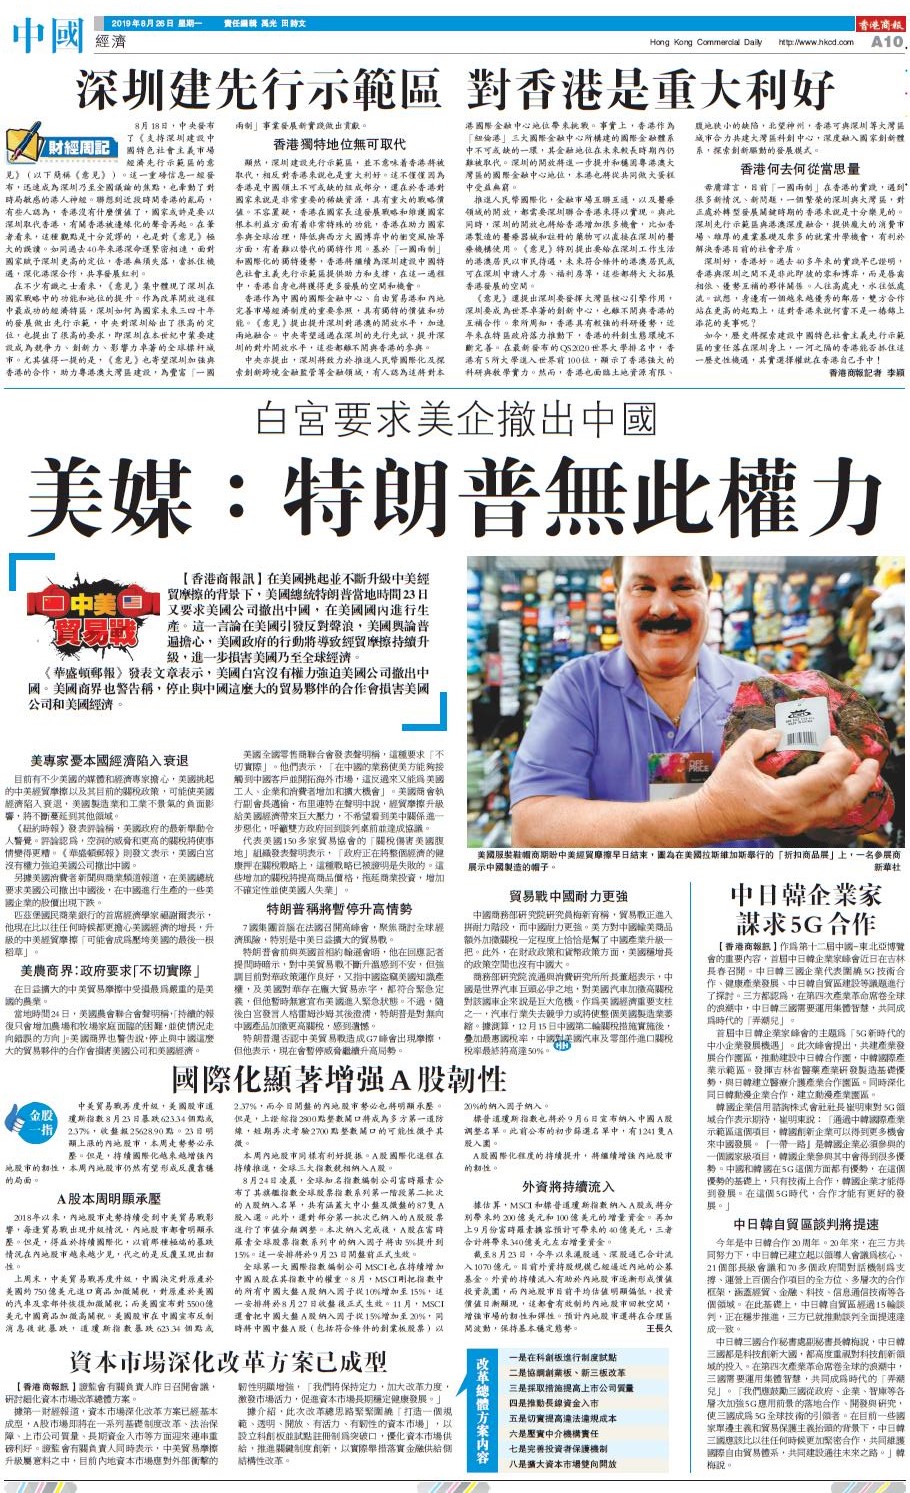 08月26日香港商报A10